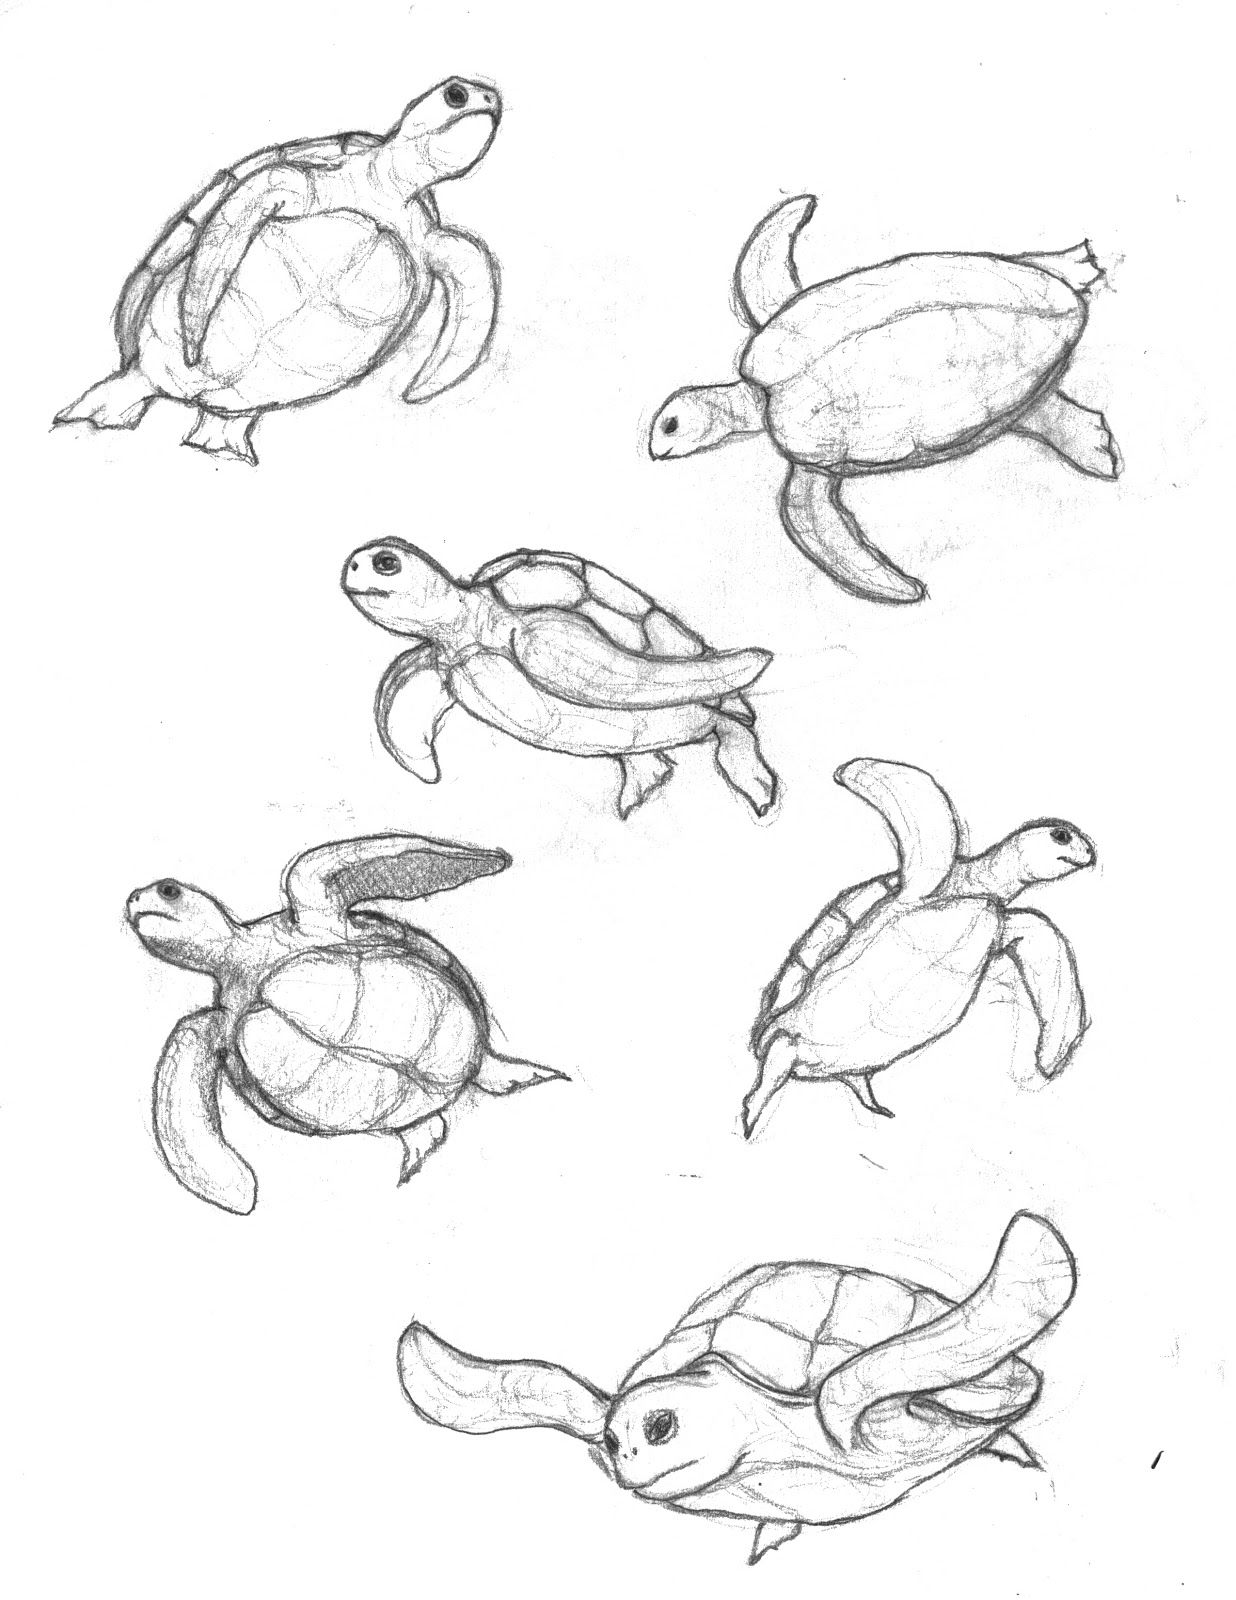  Stap voor stap een schattige zwemmende schildpad tekenen